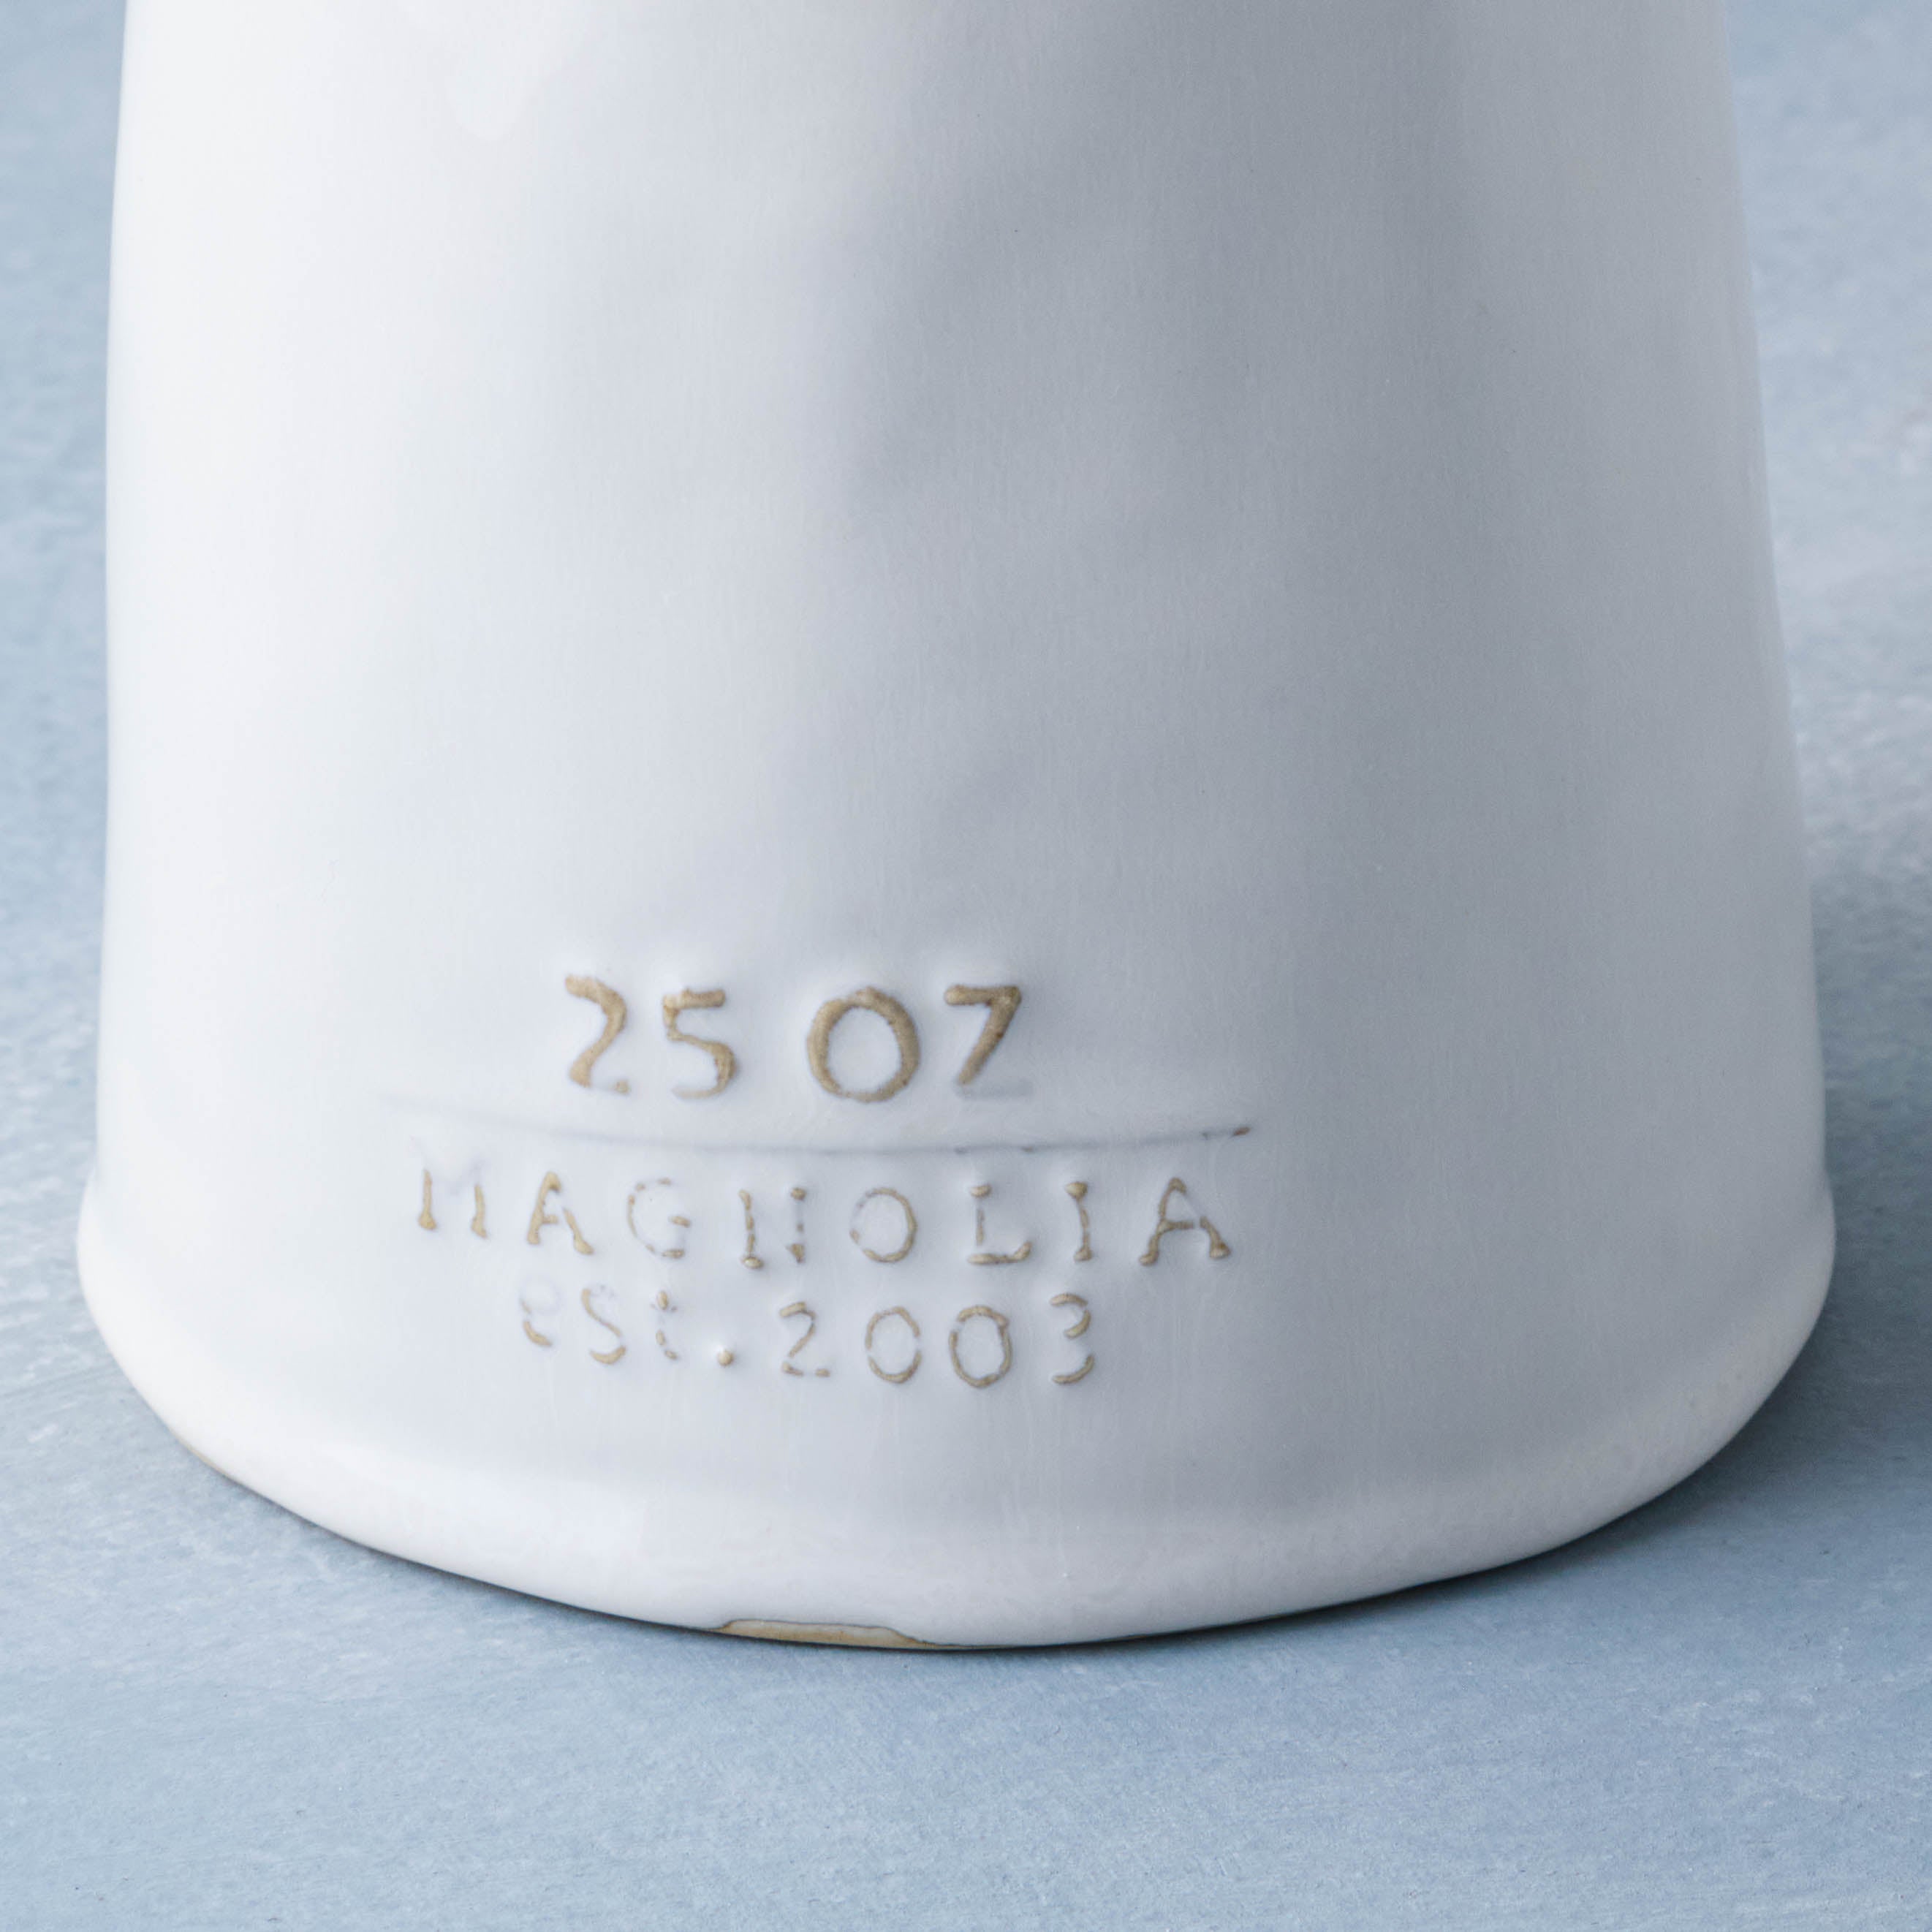 Magnolia Est. Oil Pour - Magnolia